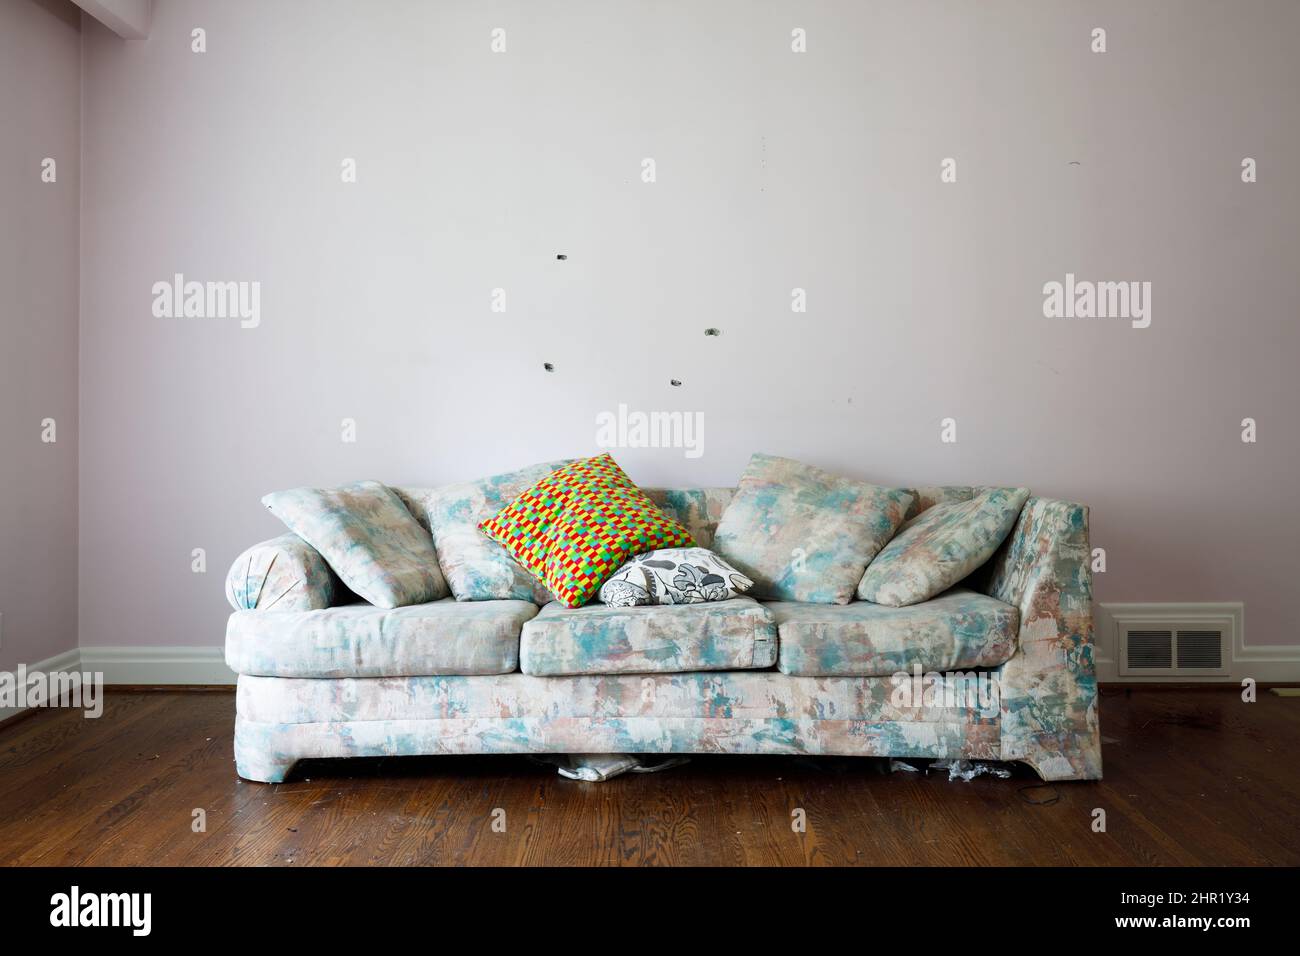 Eine hässliche Couch in einem ansonsten leeren Raum. Dieses Haus wurde abgerissen. Stockfoto